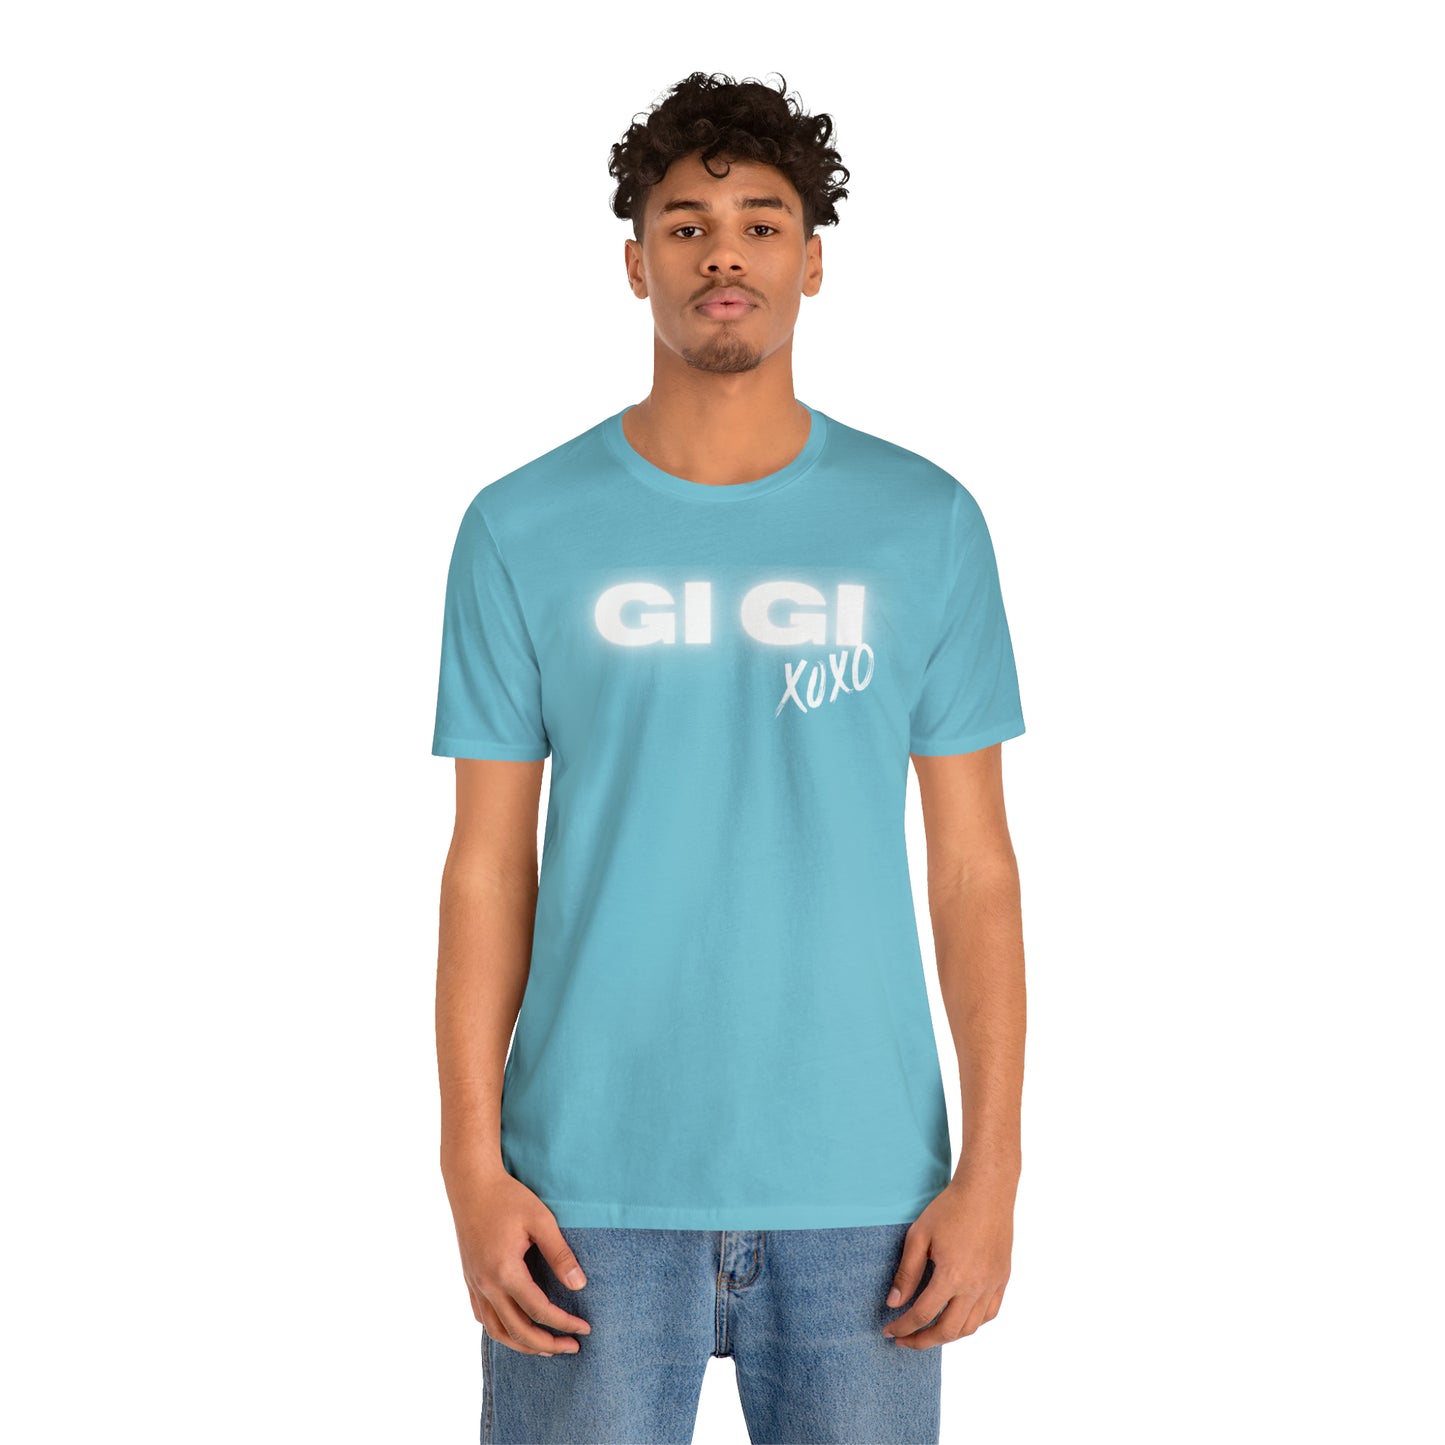 GI GI XOXO T-Shirt